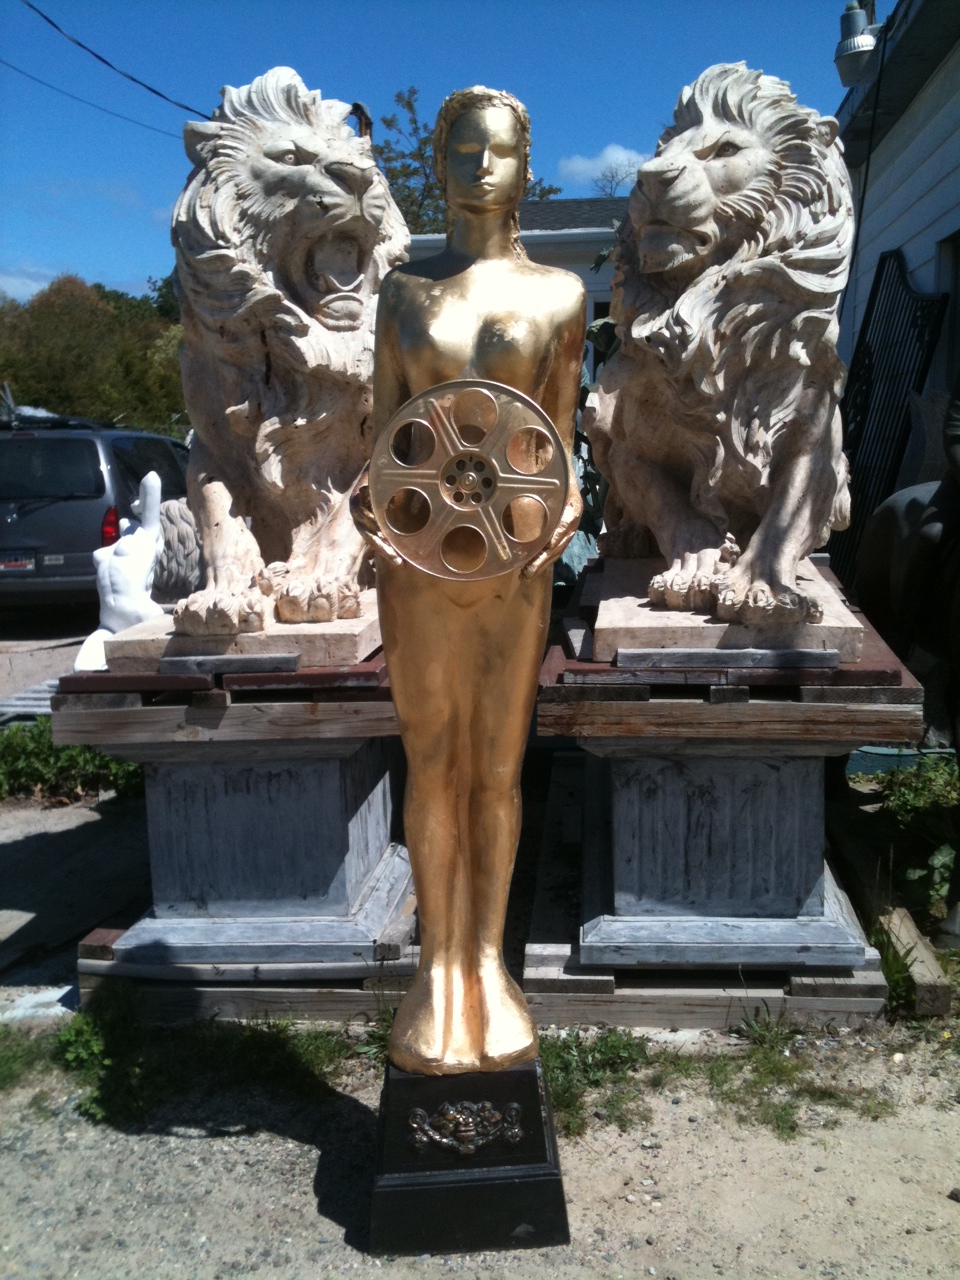 Gold Award Statue